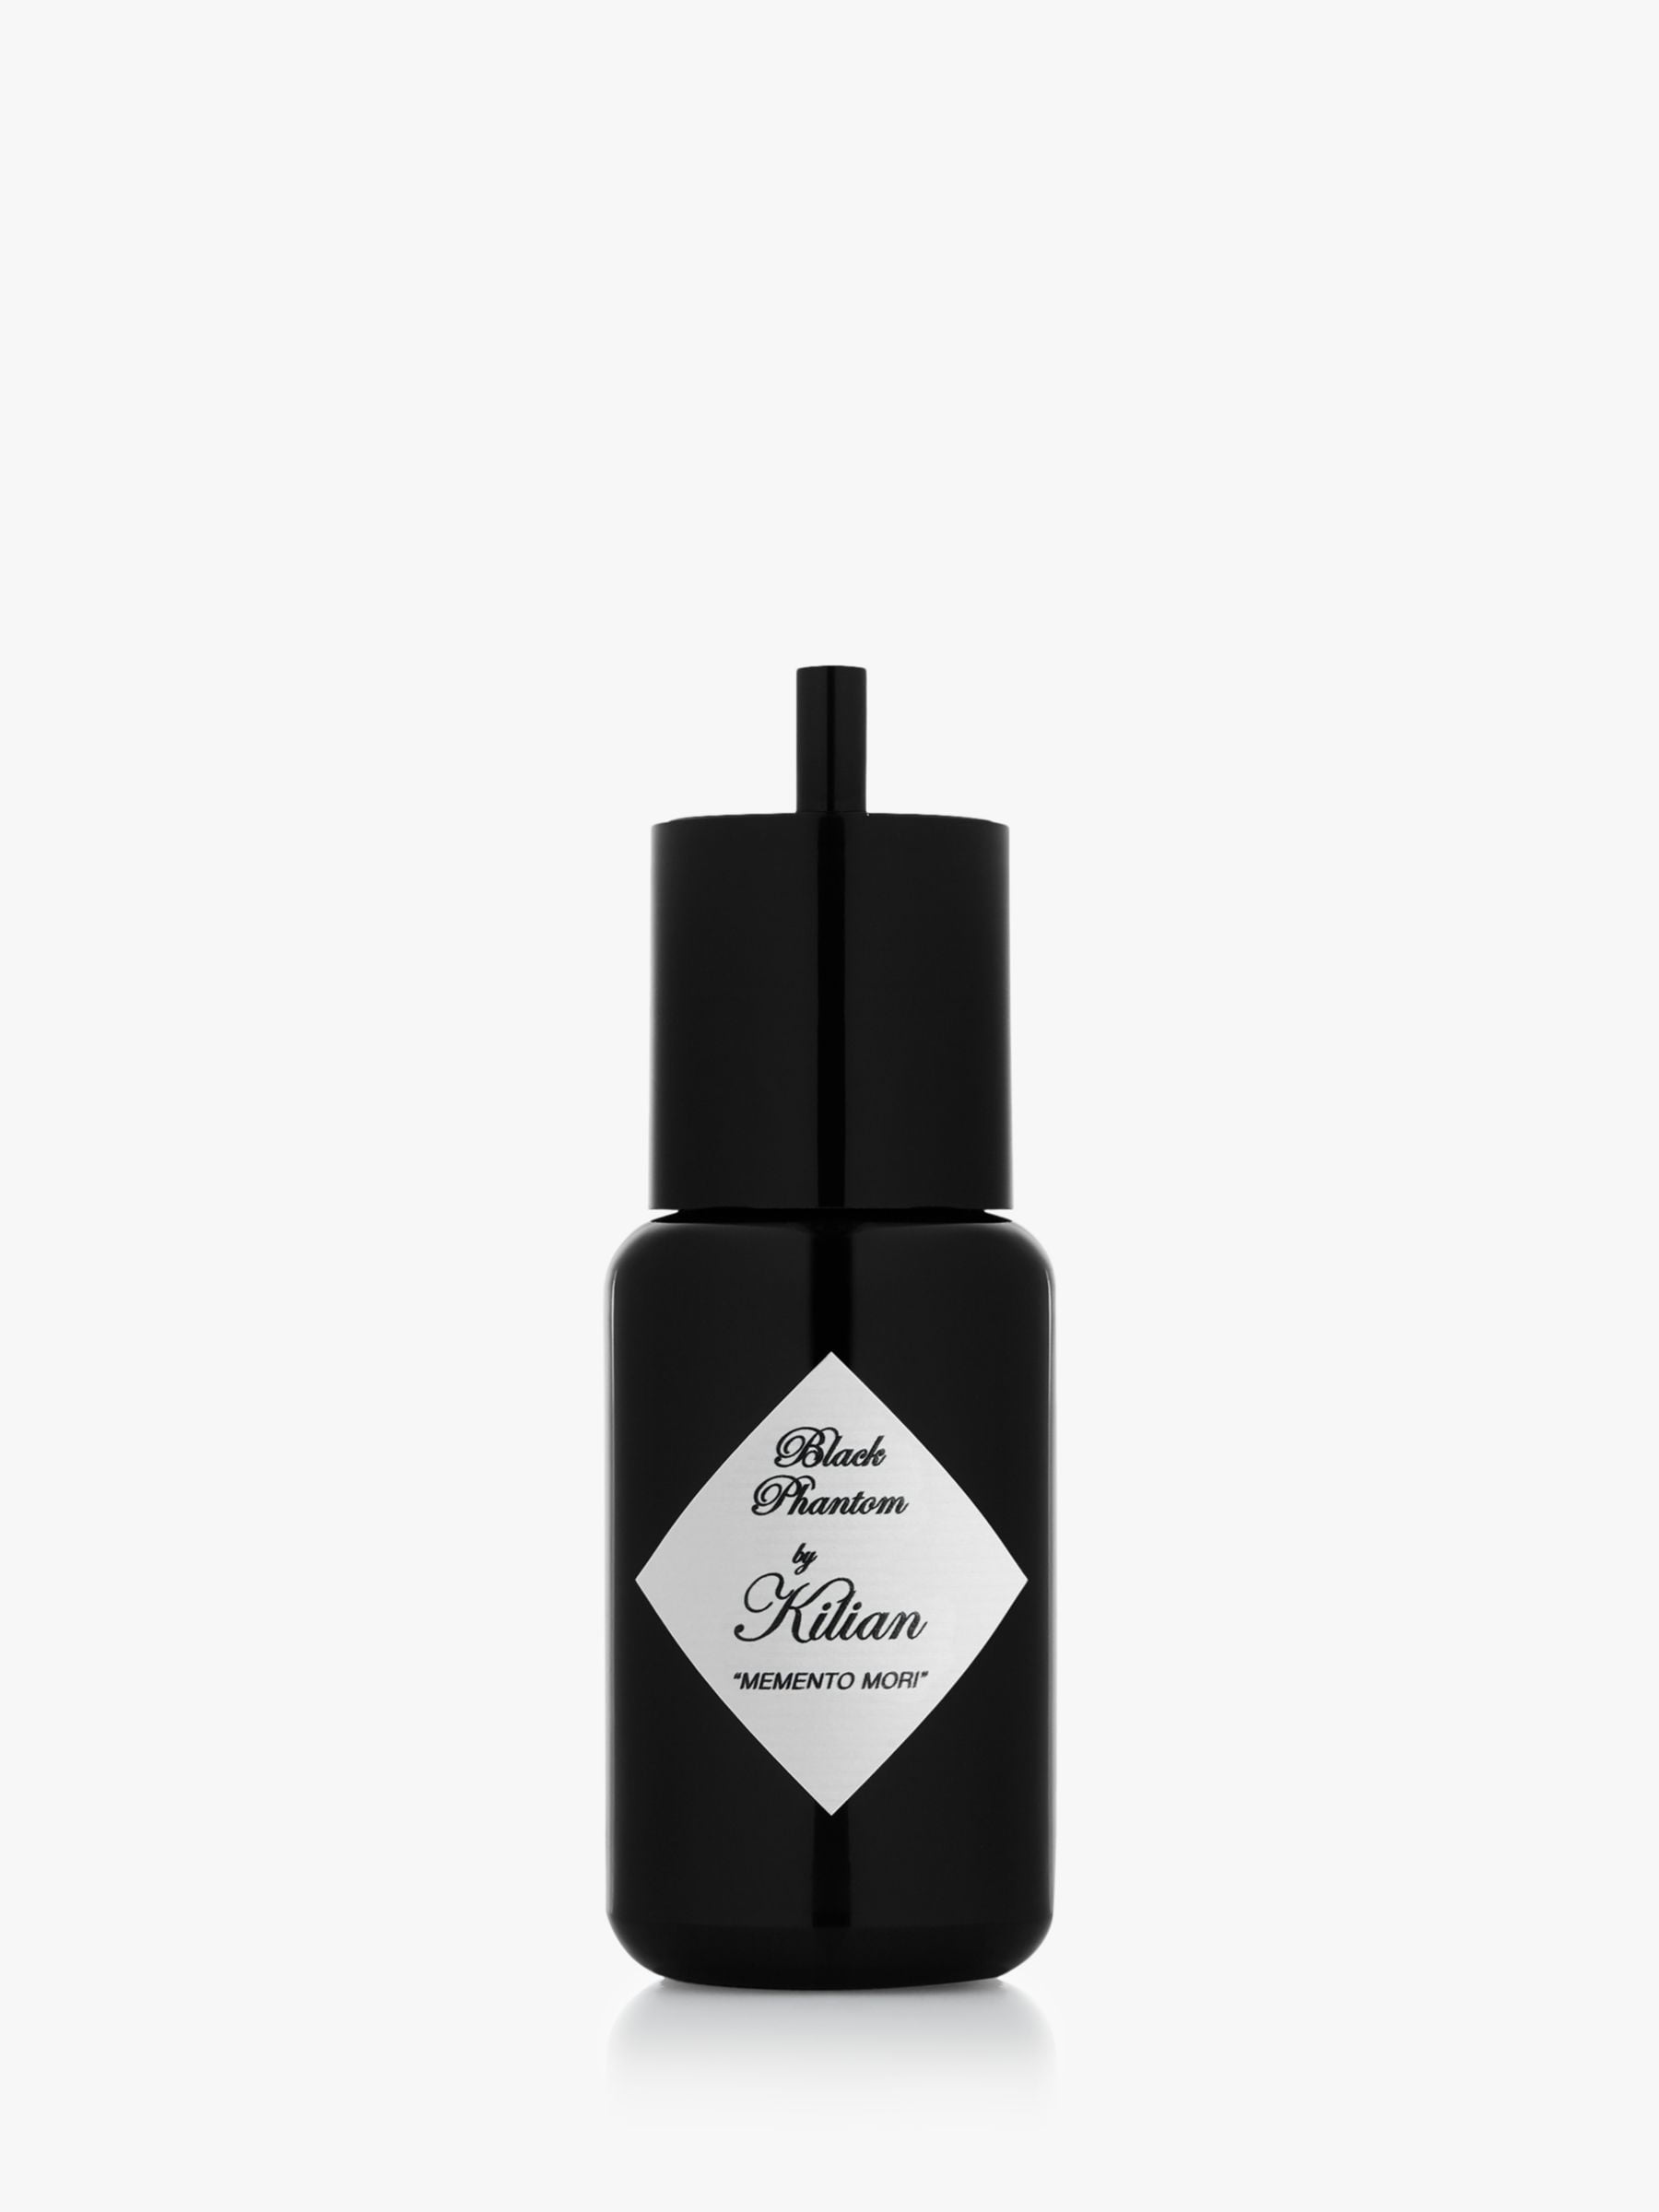 Noir Aphrodisiaque By Kilian perfume EDP 50ml/ 1.7 oz Refill